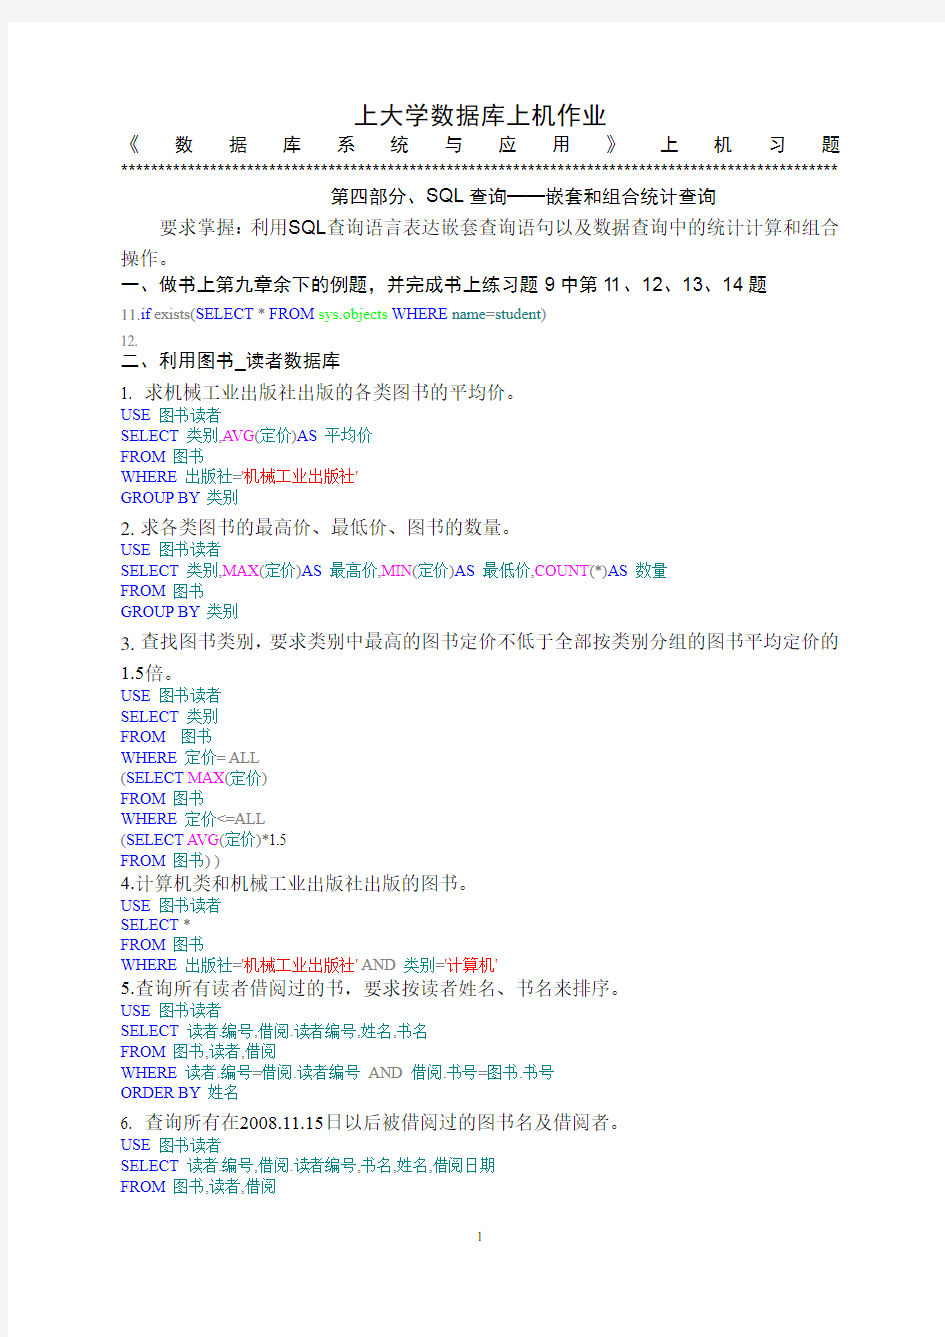 (完整版)上海大学数据库上机作业上机练习4作业